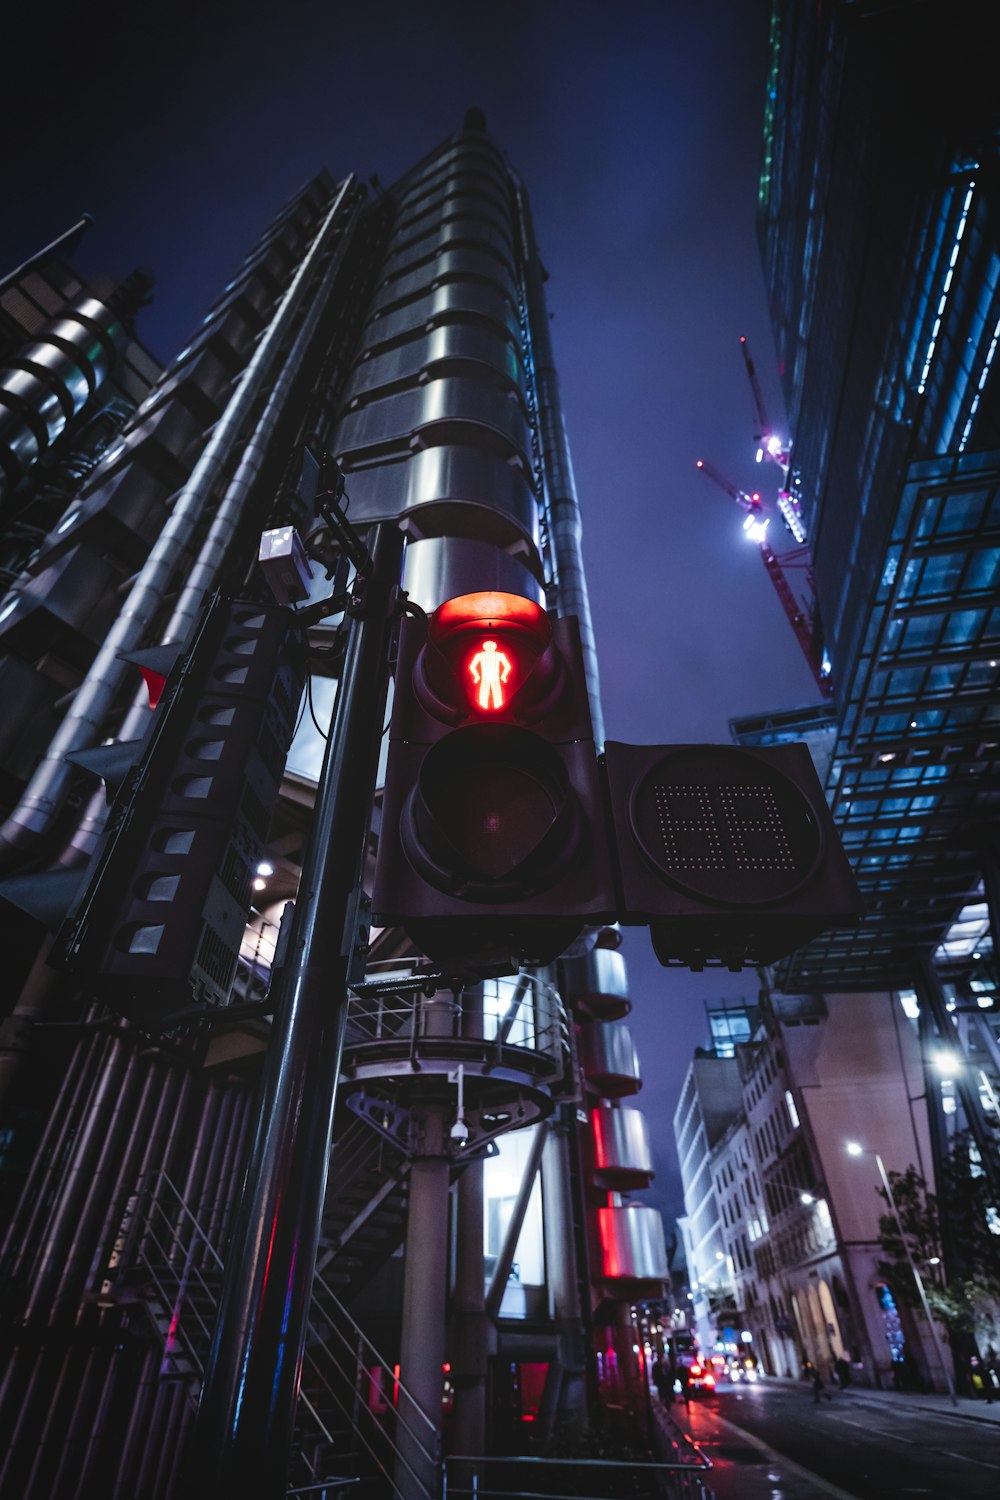 Eine Ampel an einem Mast in einer Stadt bei Nacht